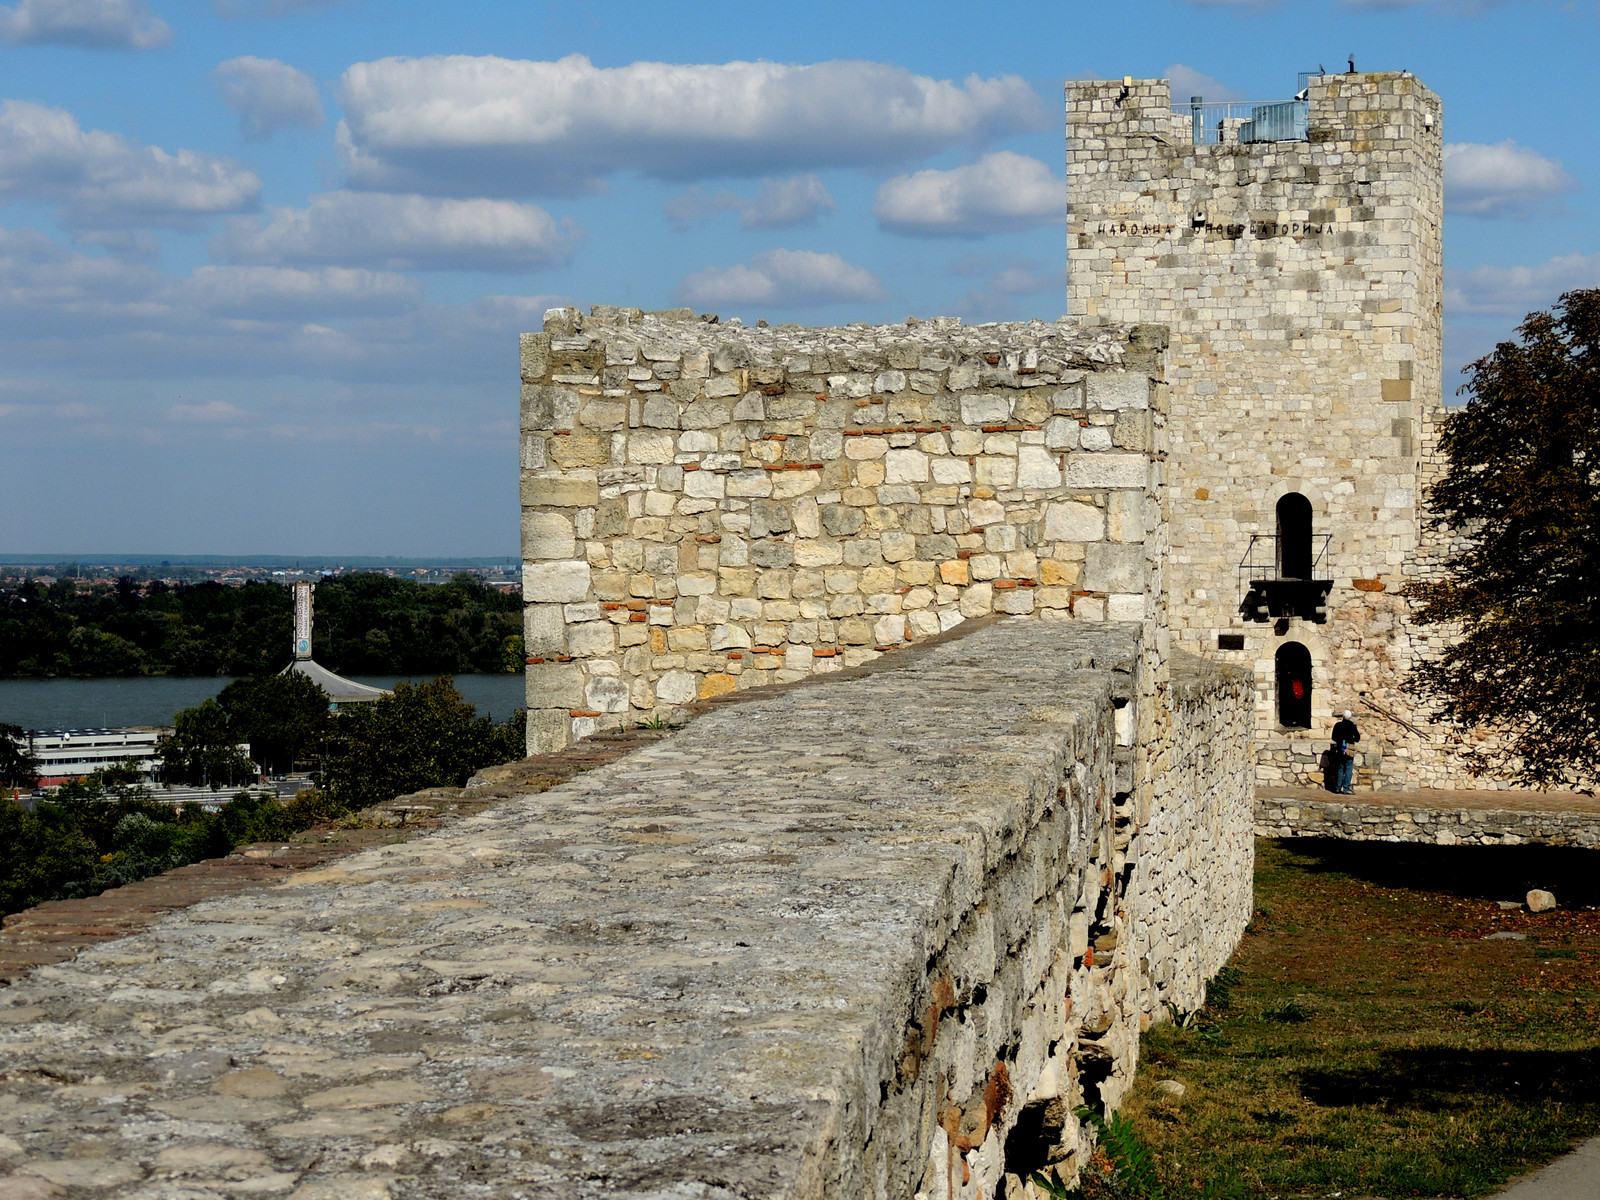 Festung von Belgrad